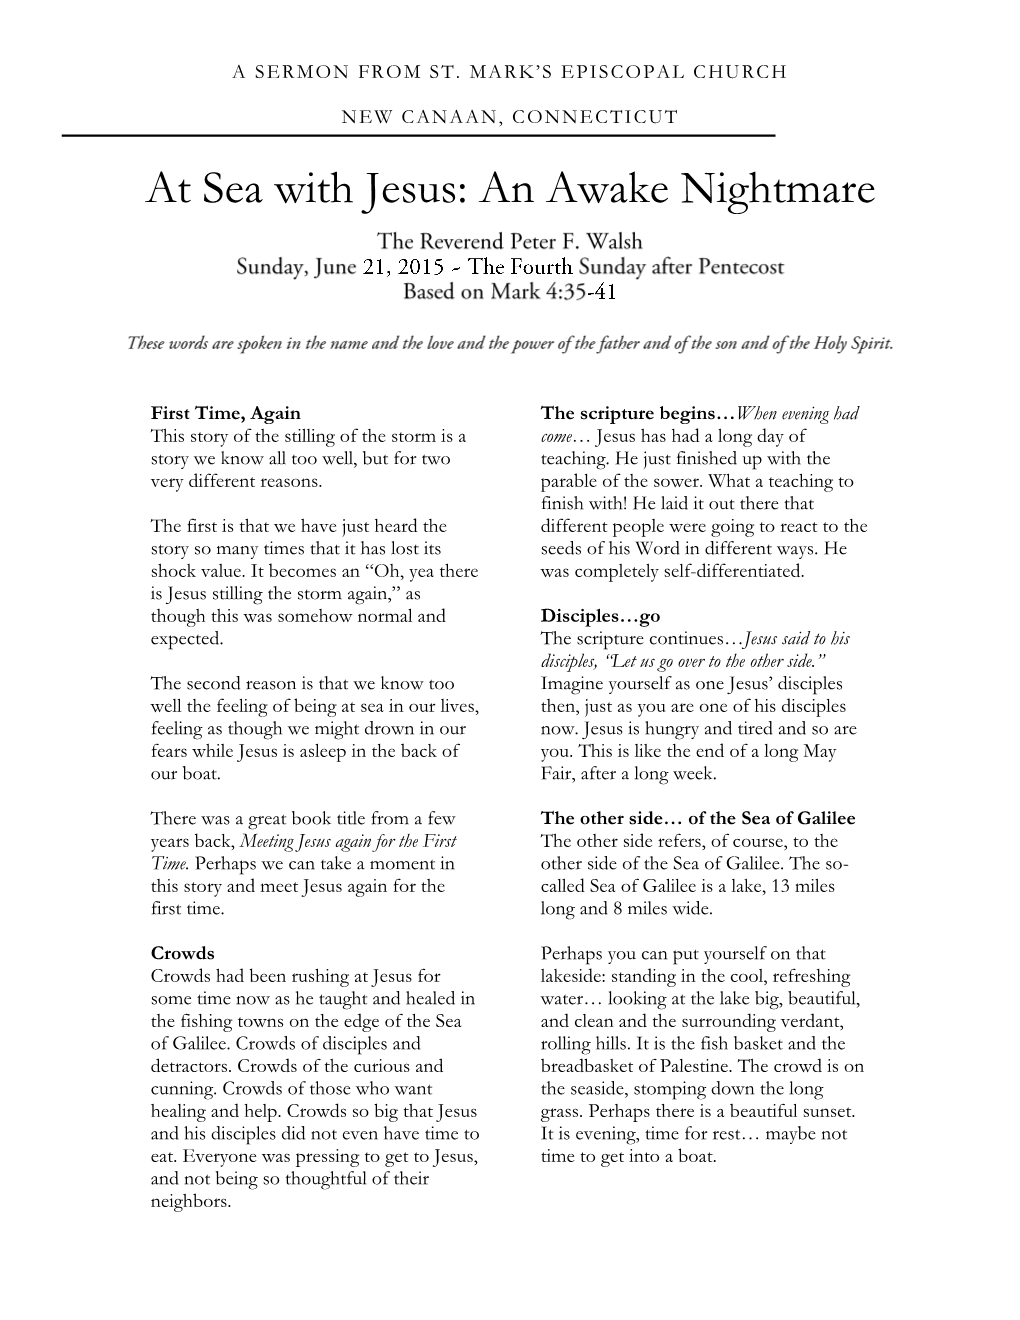 At Sea with Jesus: an Awake Nightmare